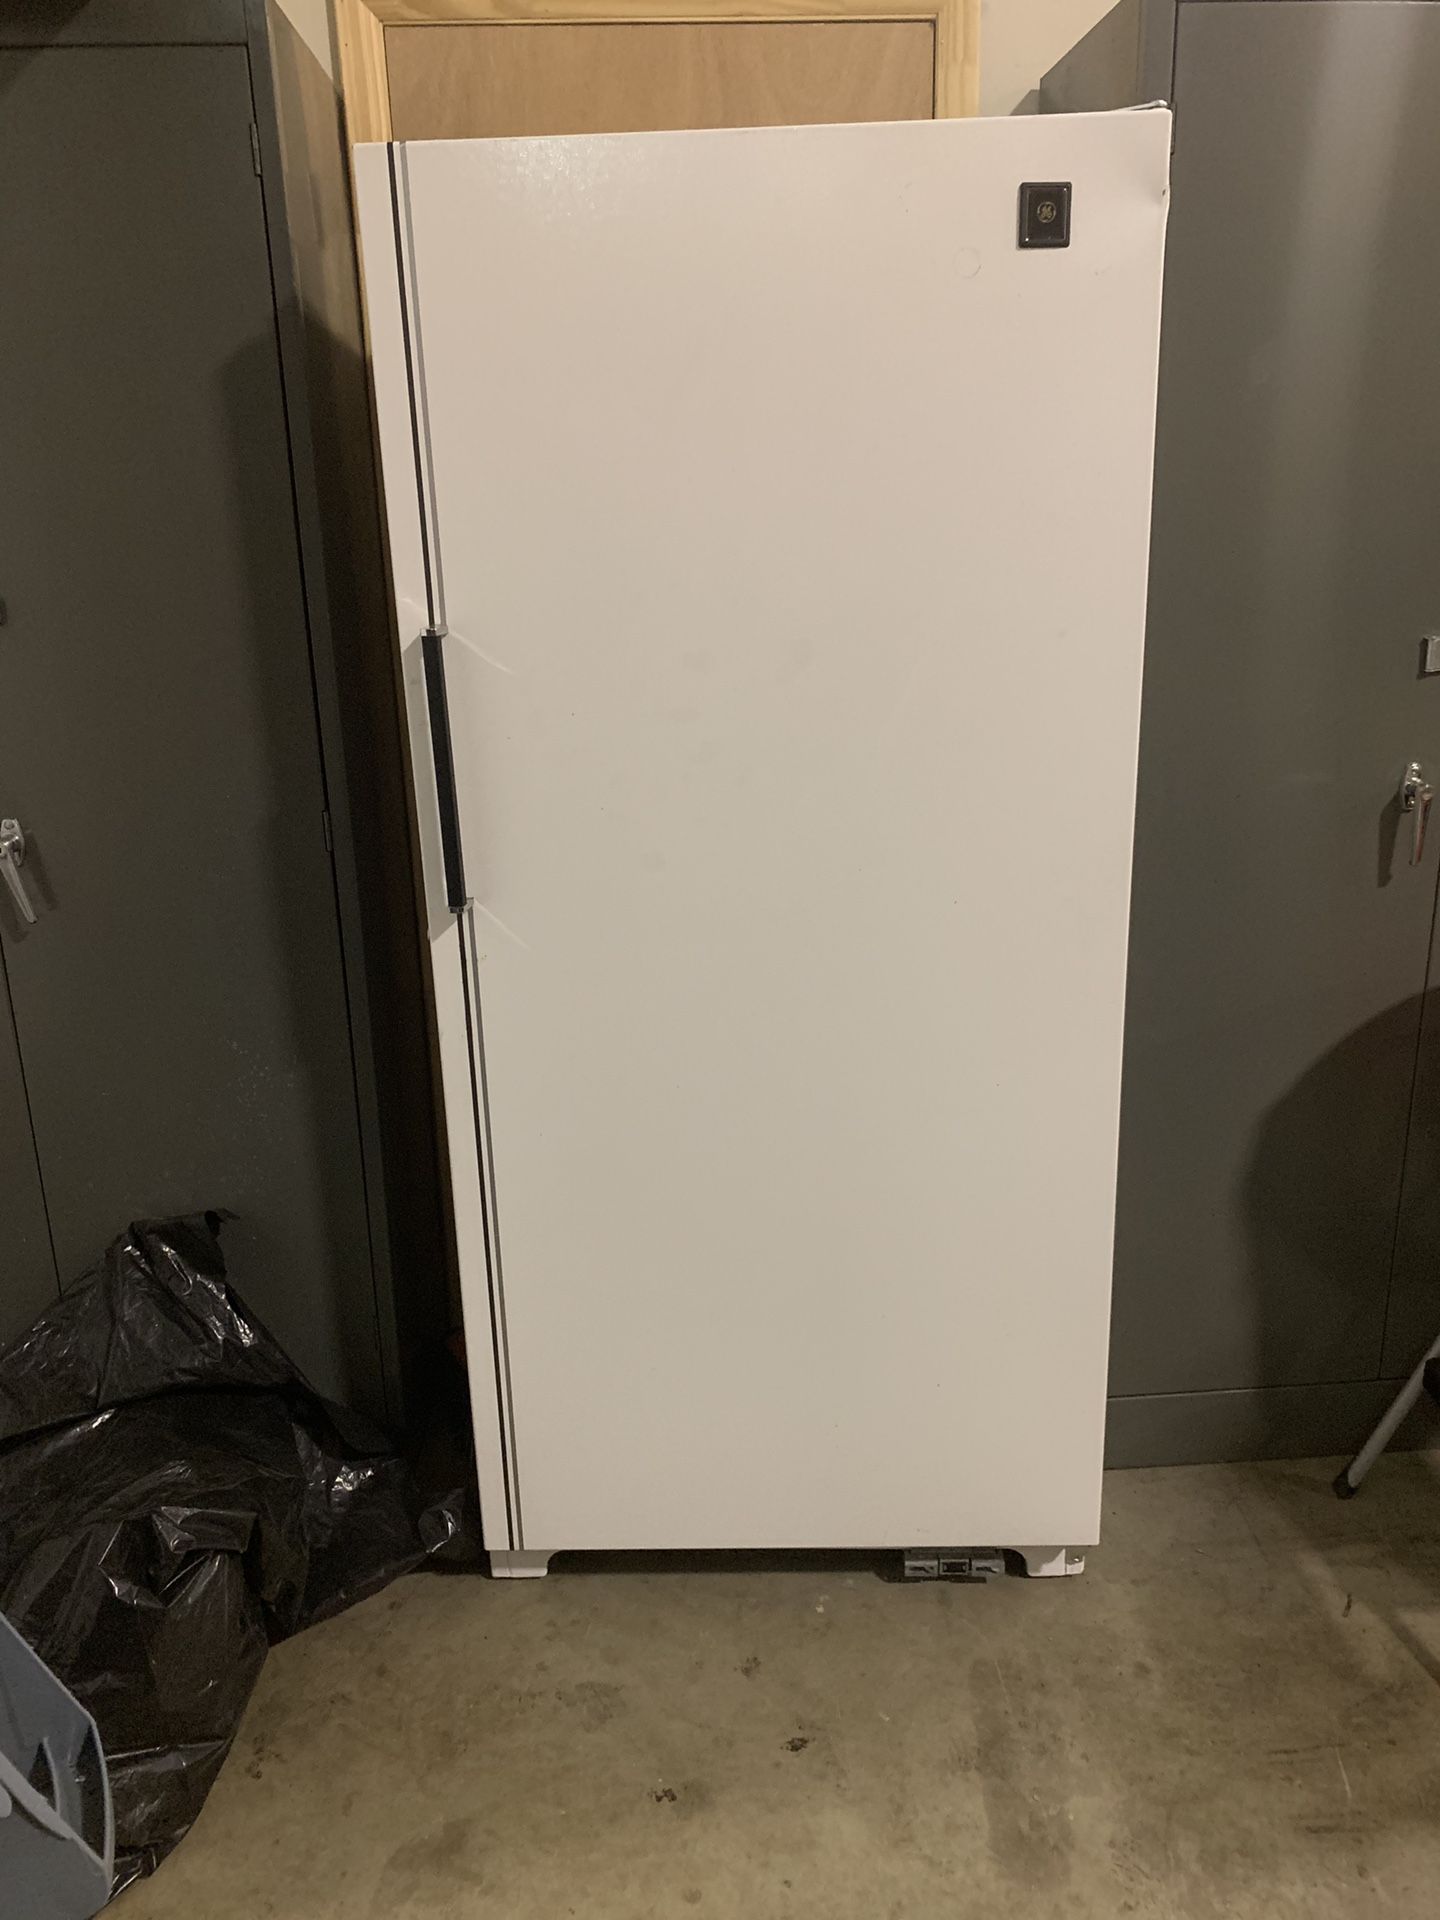 Full size freezer